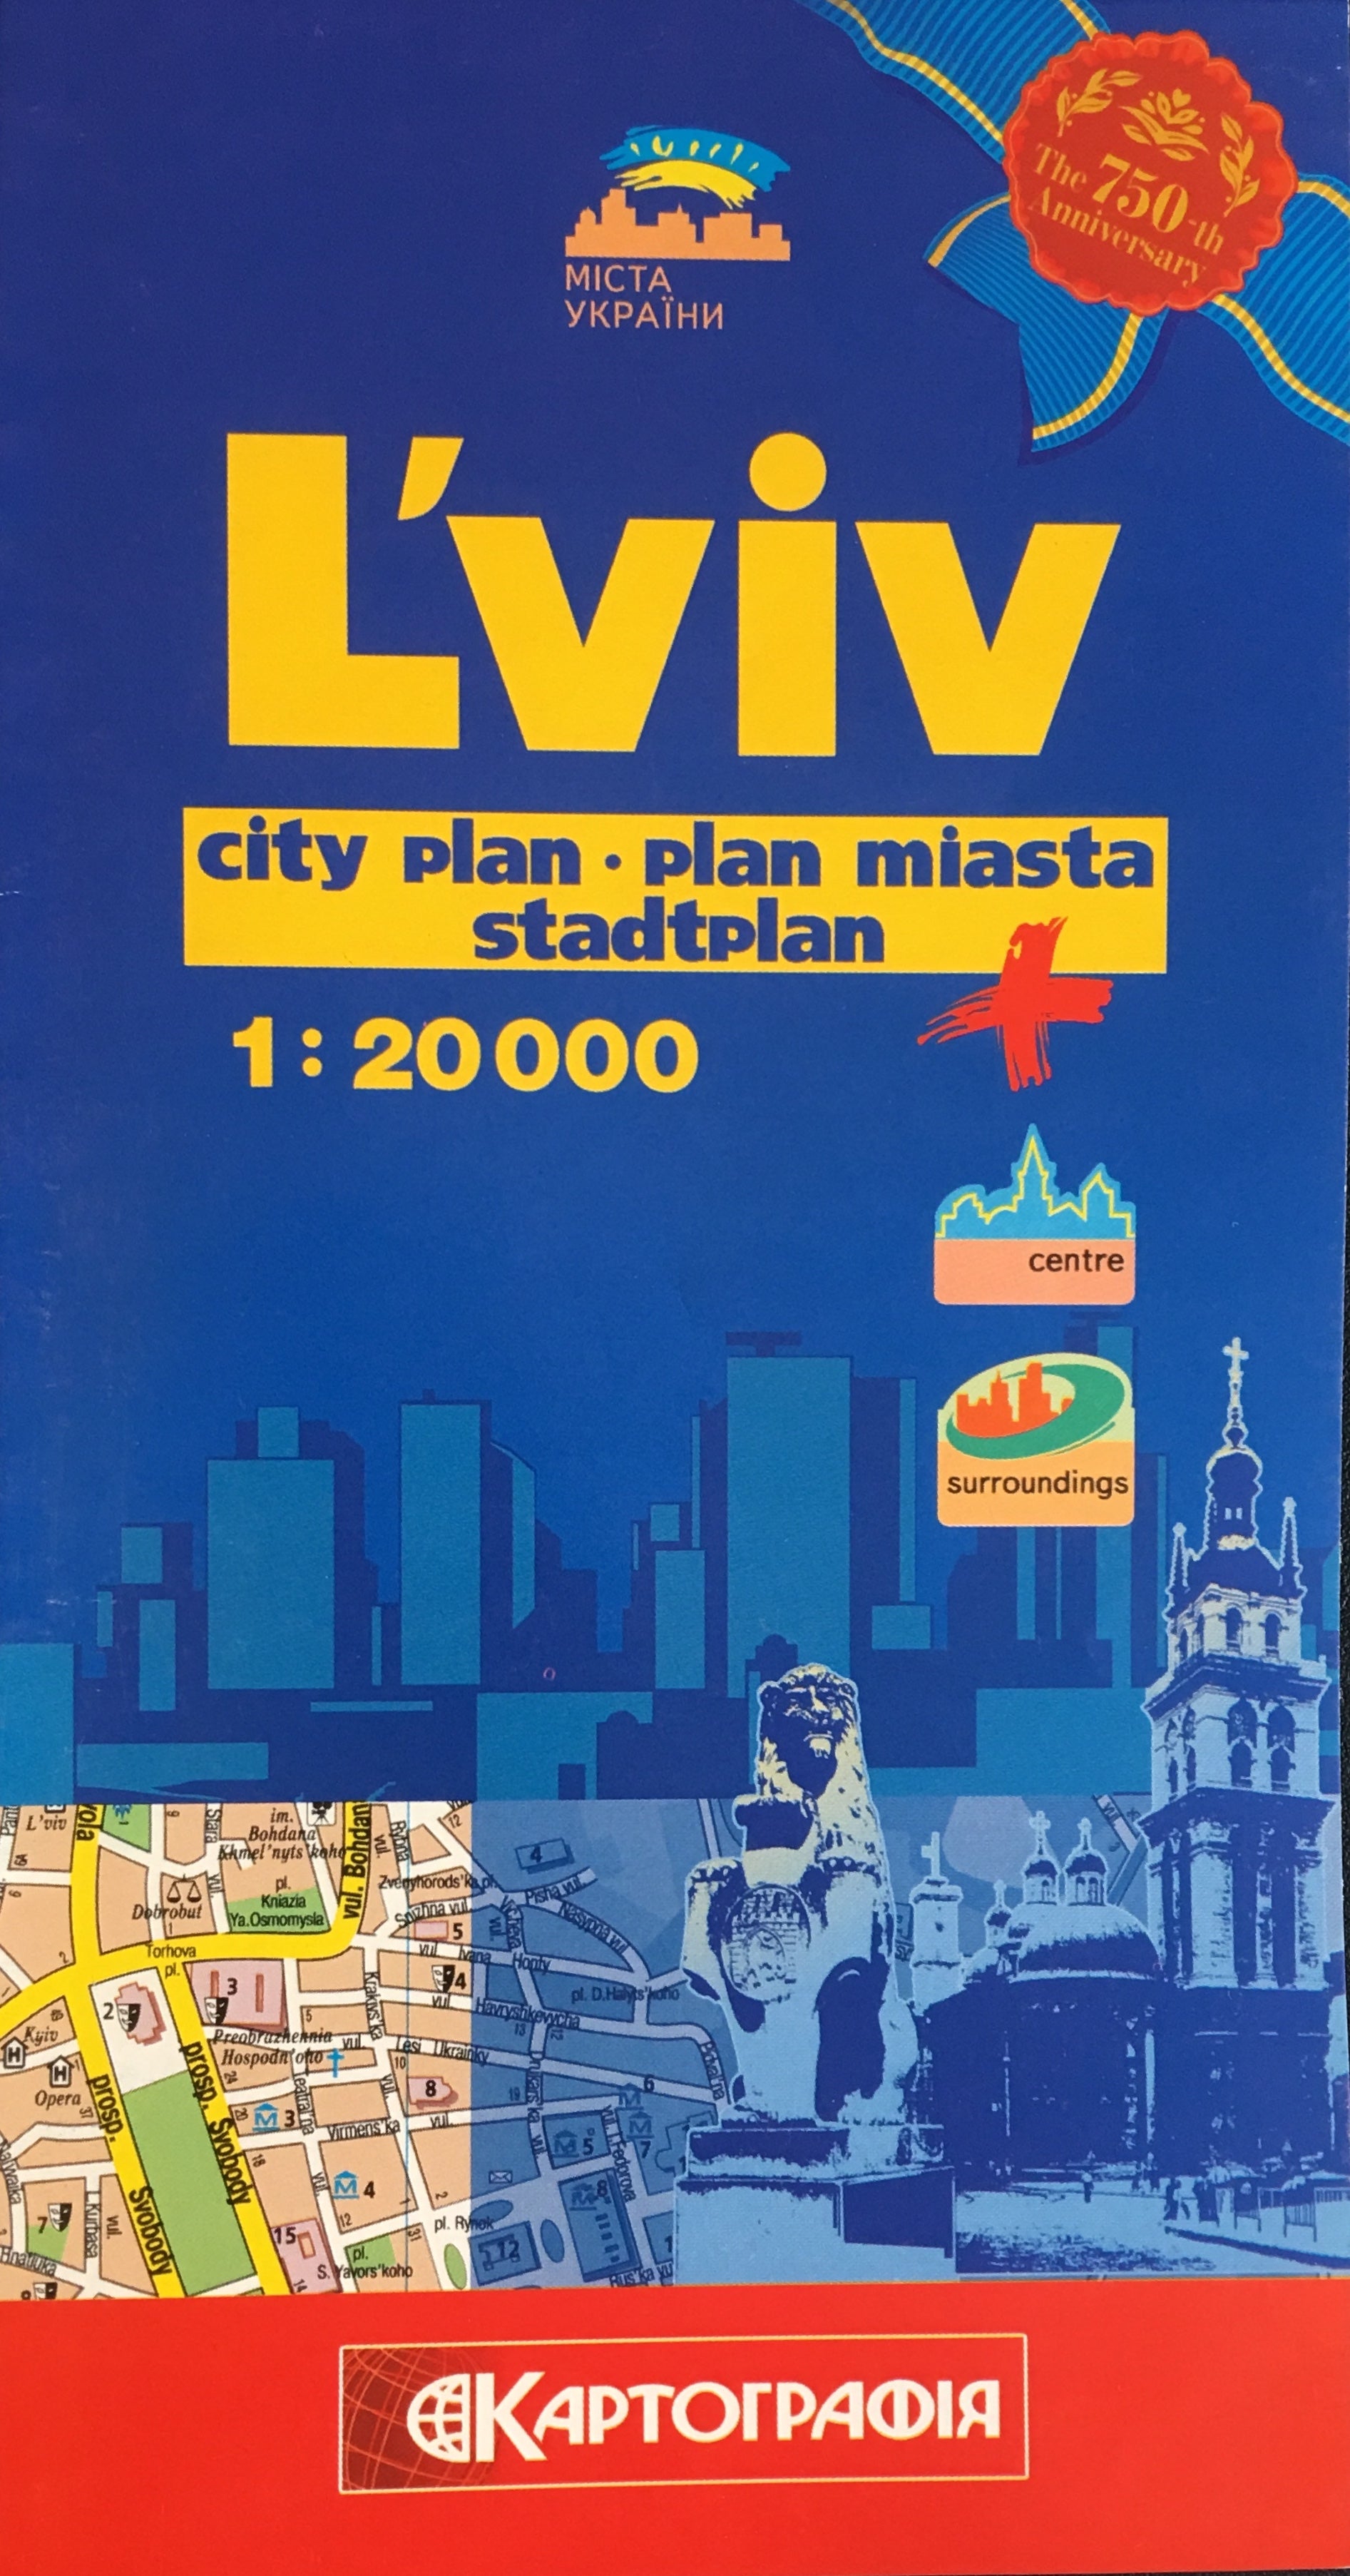 City Plan L'viv 1:20,000